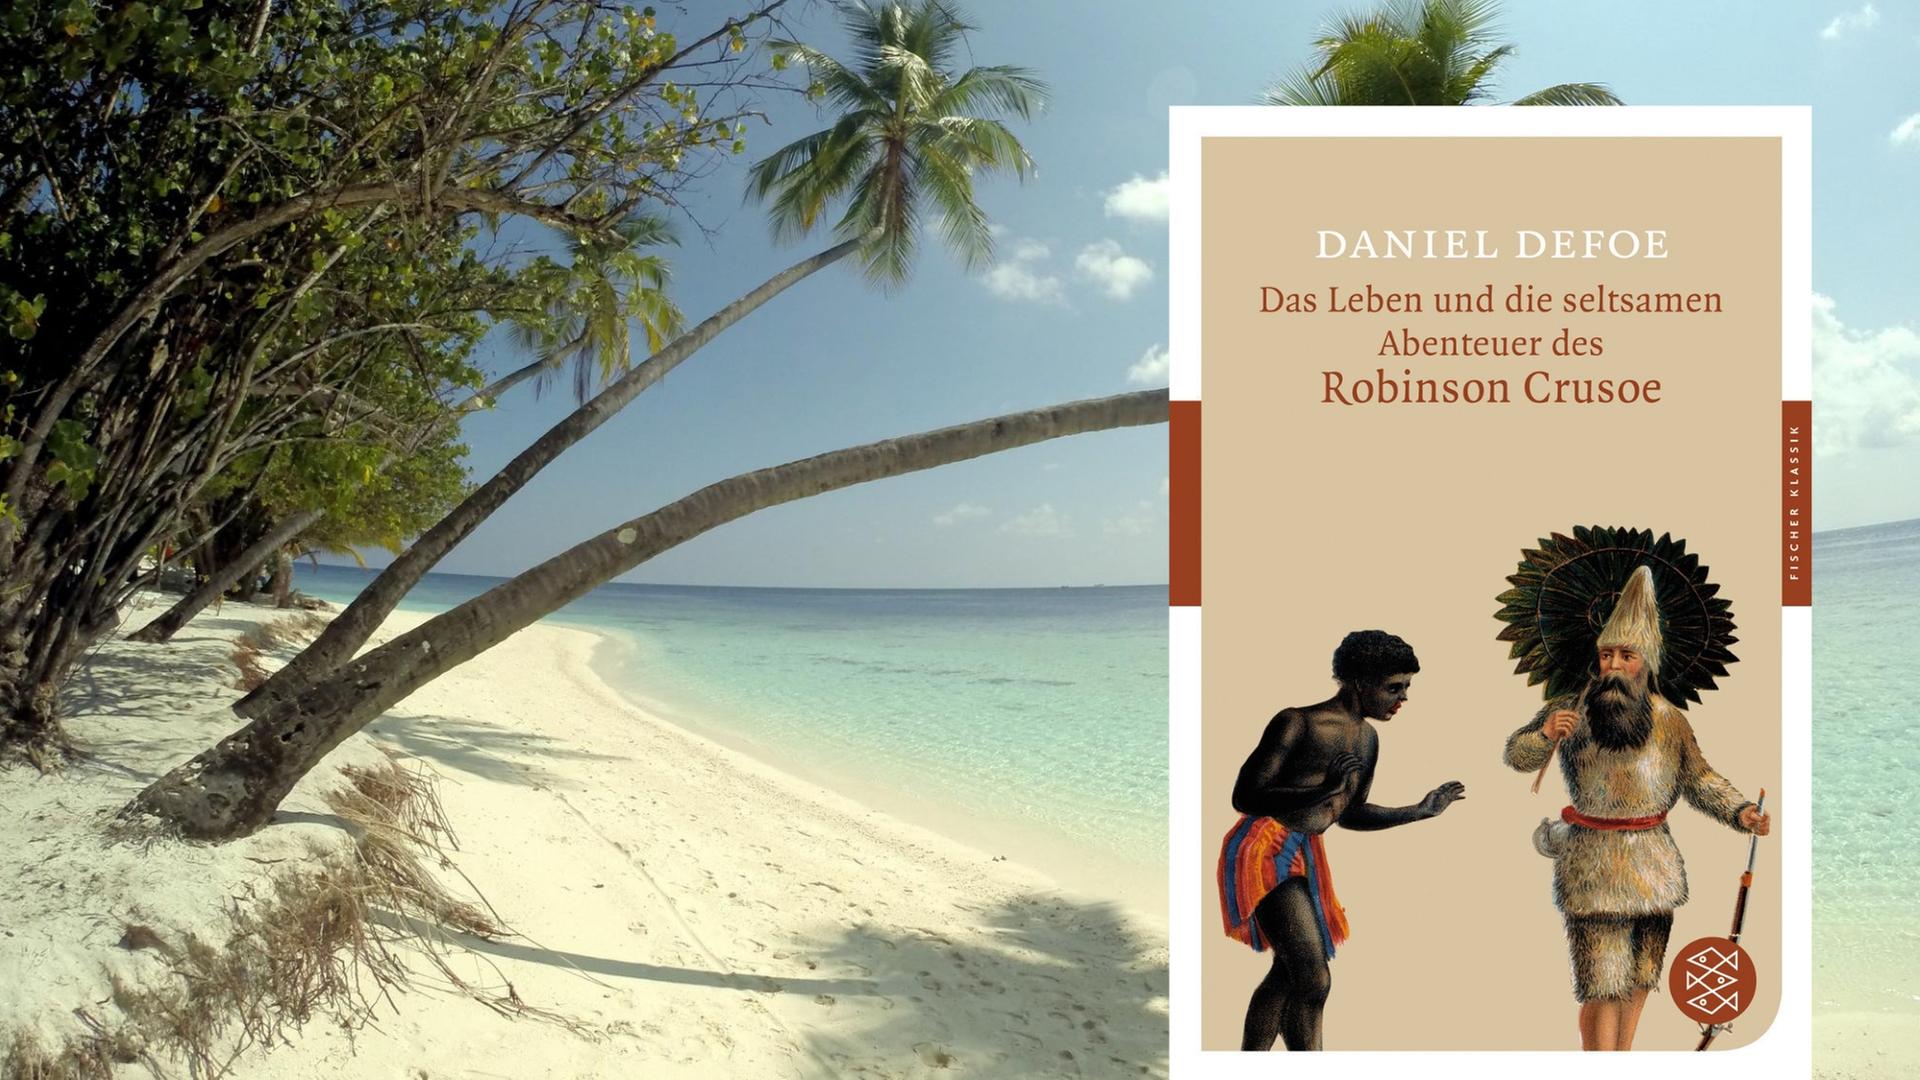 Buchcover: Daniel Defoe: "Das Leben und die seltsamen Abenteuer des Robinson Crusoe"